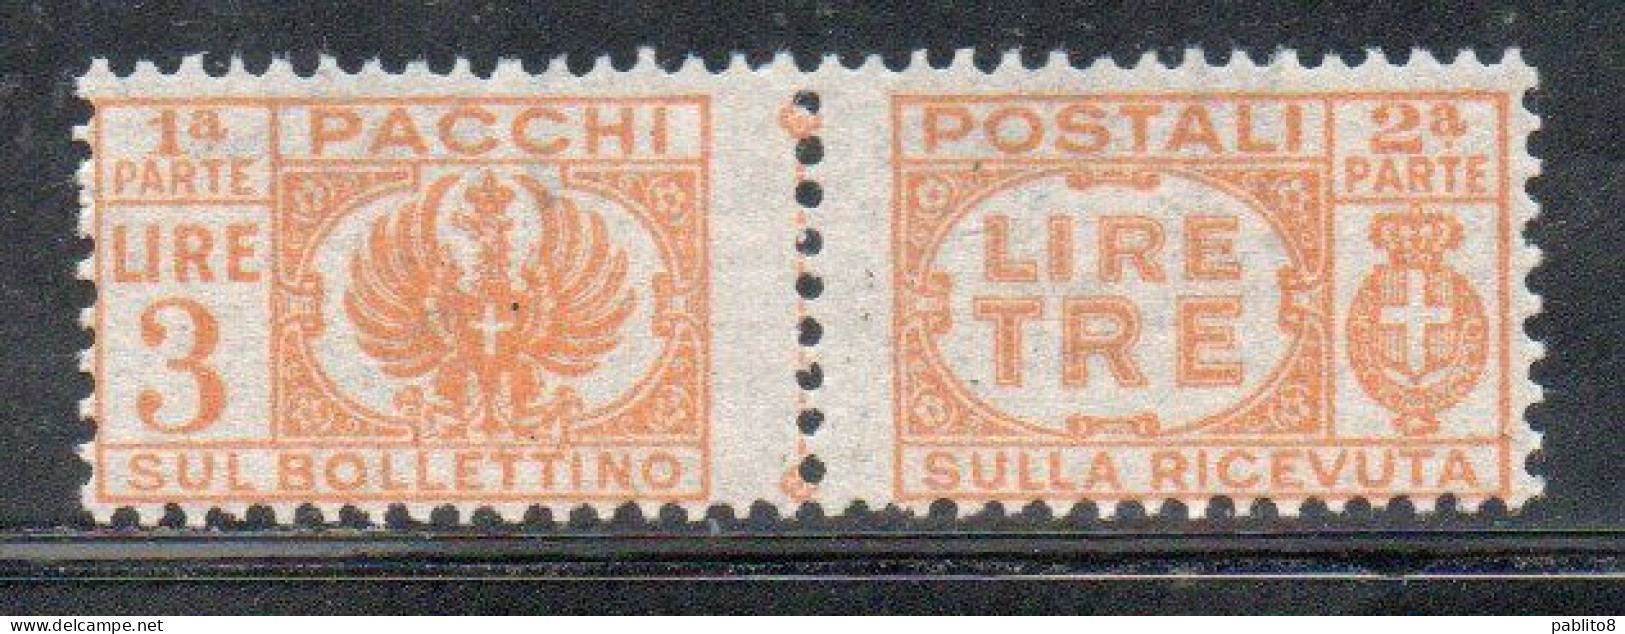 ITALIA REGNO ITALY KINGDOM 1946 LUOGOTENENZA PACCHI POSTALI SENZA FASCI PARCEL POST LIRE 3 MNH - Postpaketten